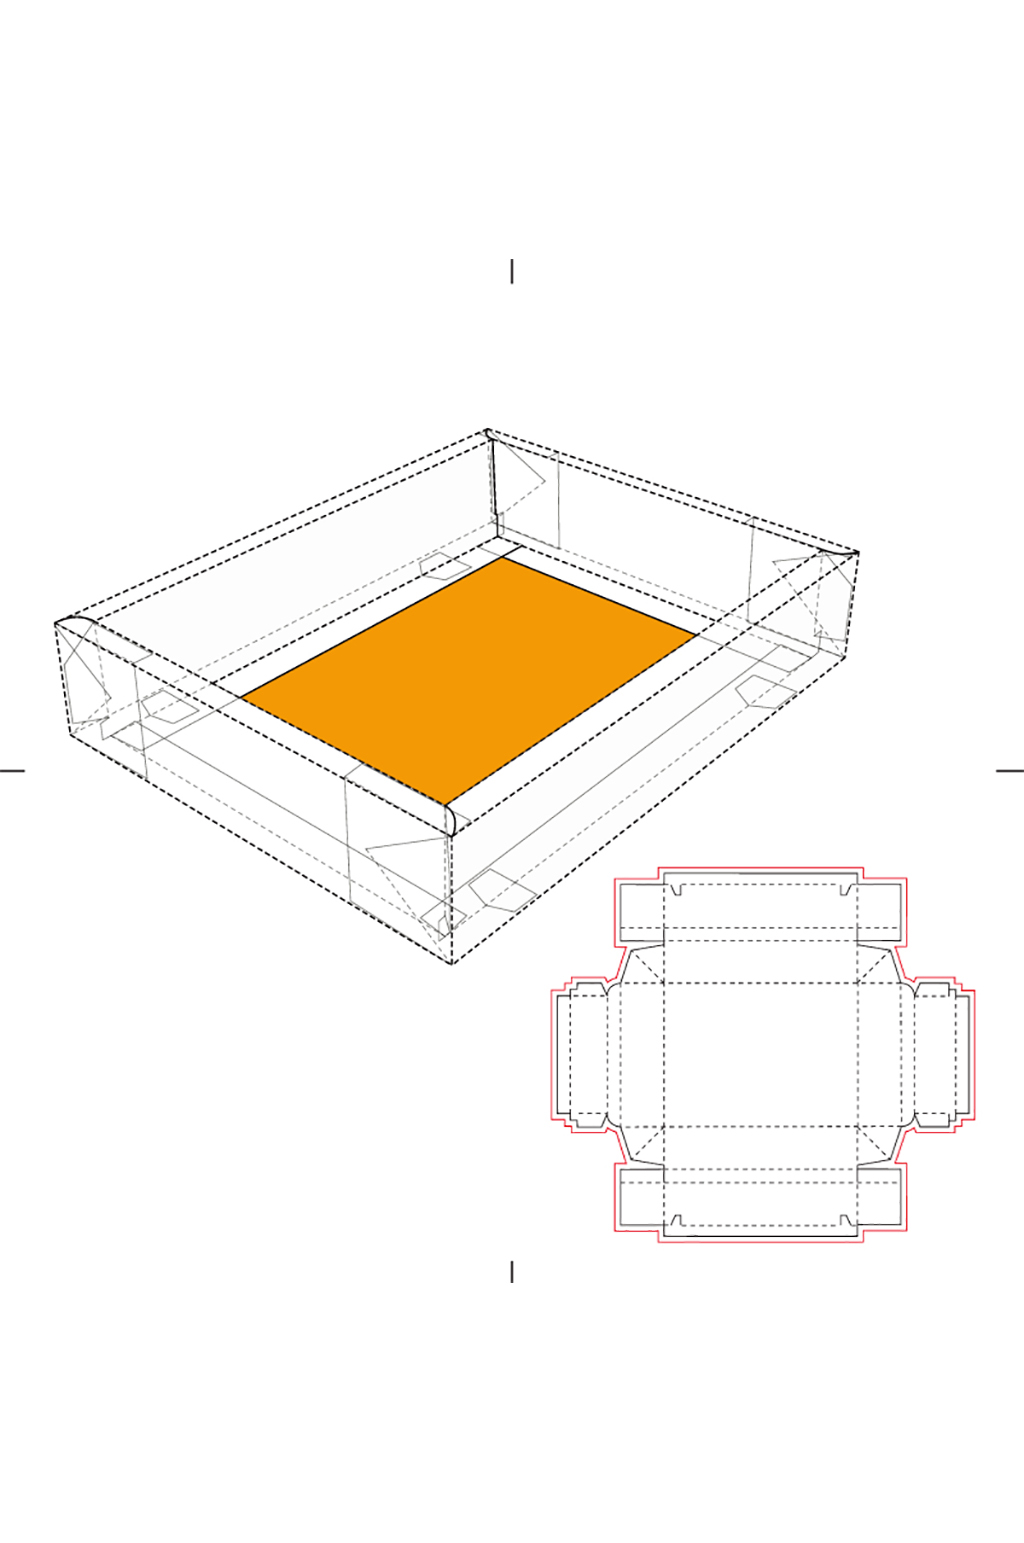 包装盒刀版图设计盒型展开图模切刀模刀线模板